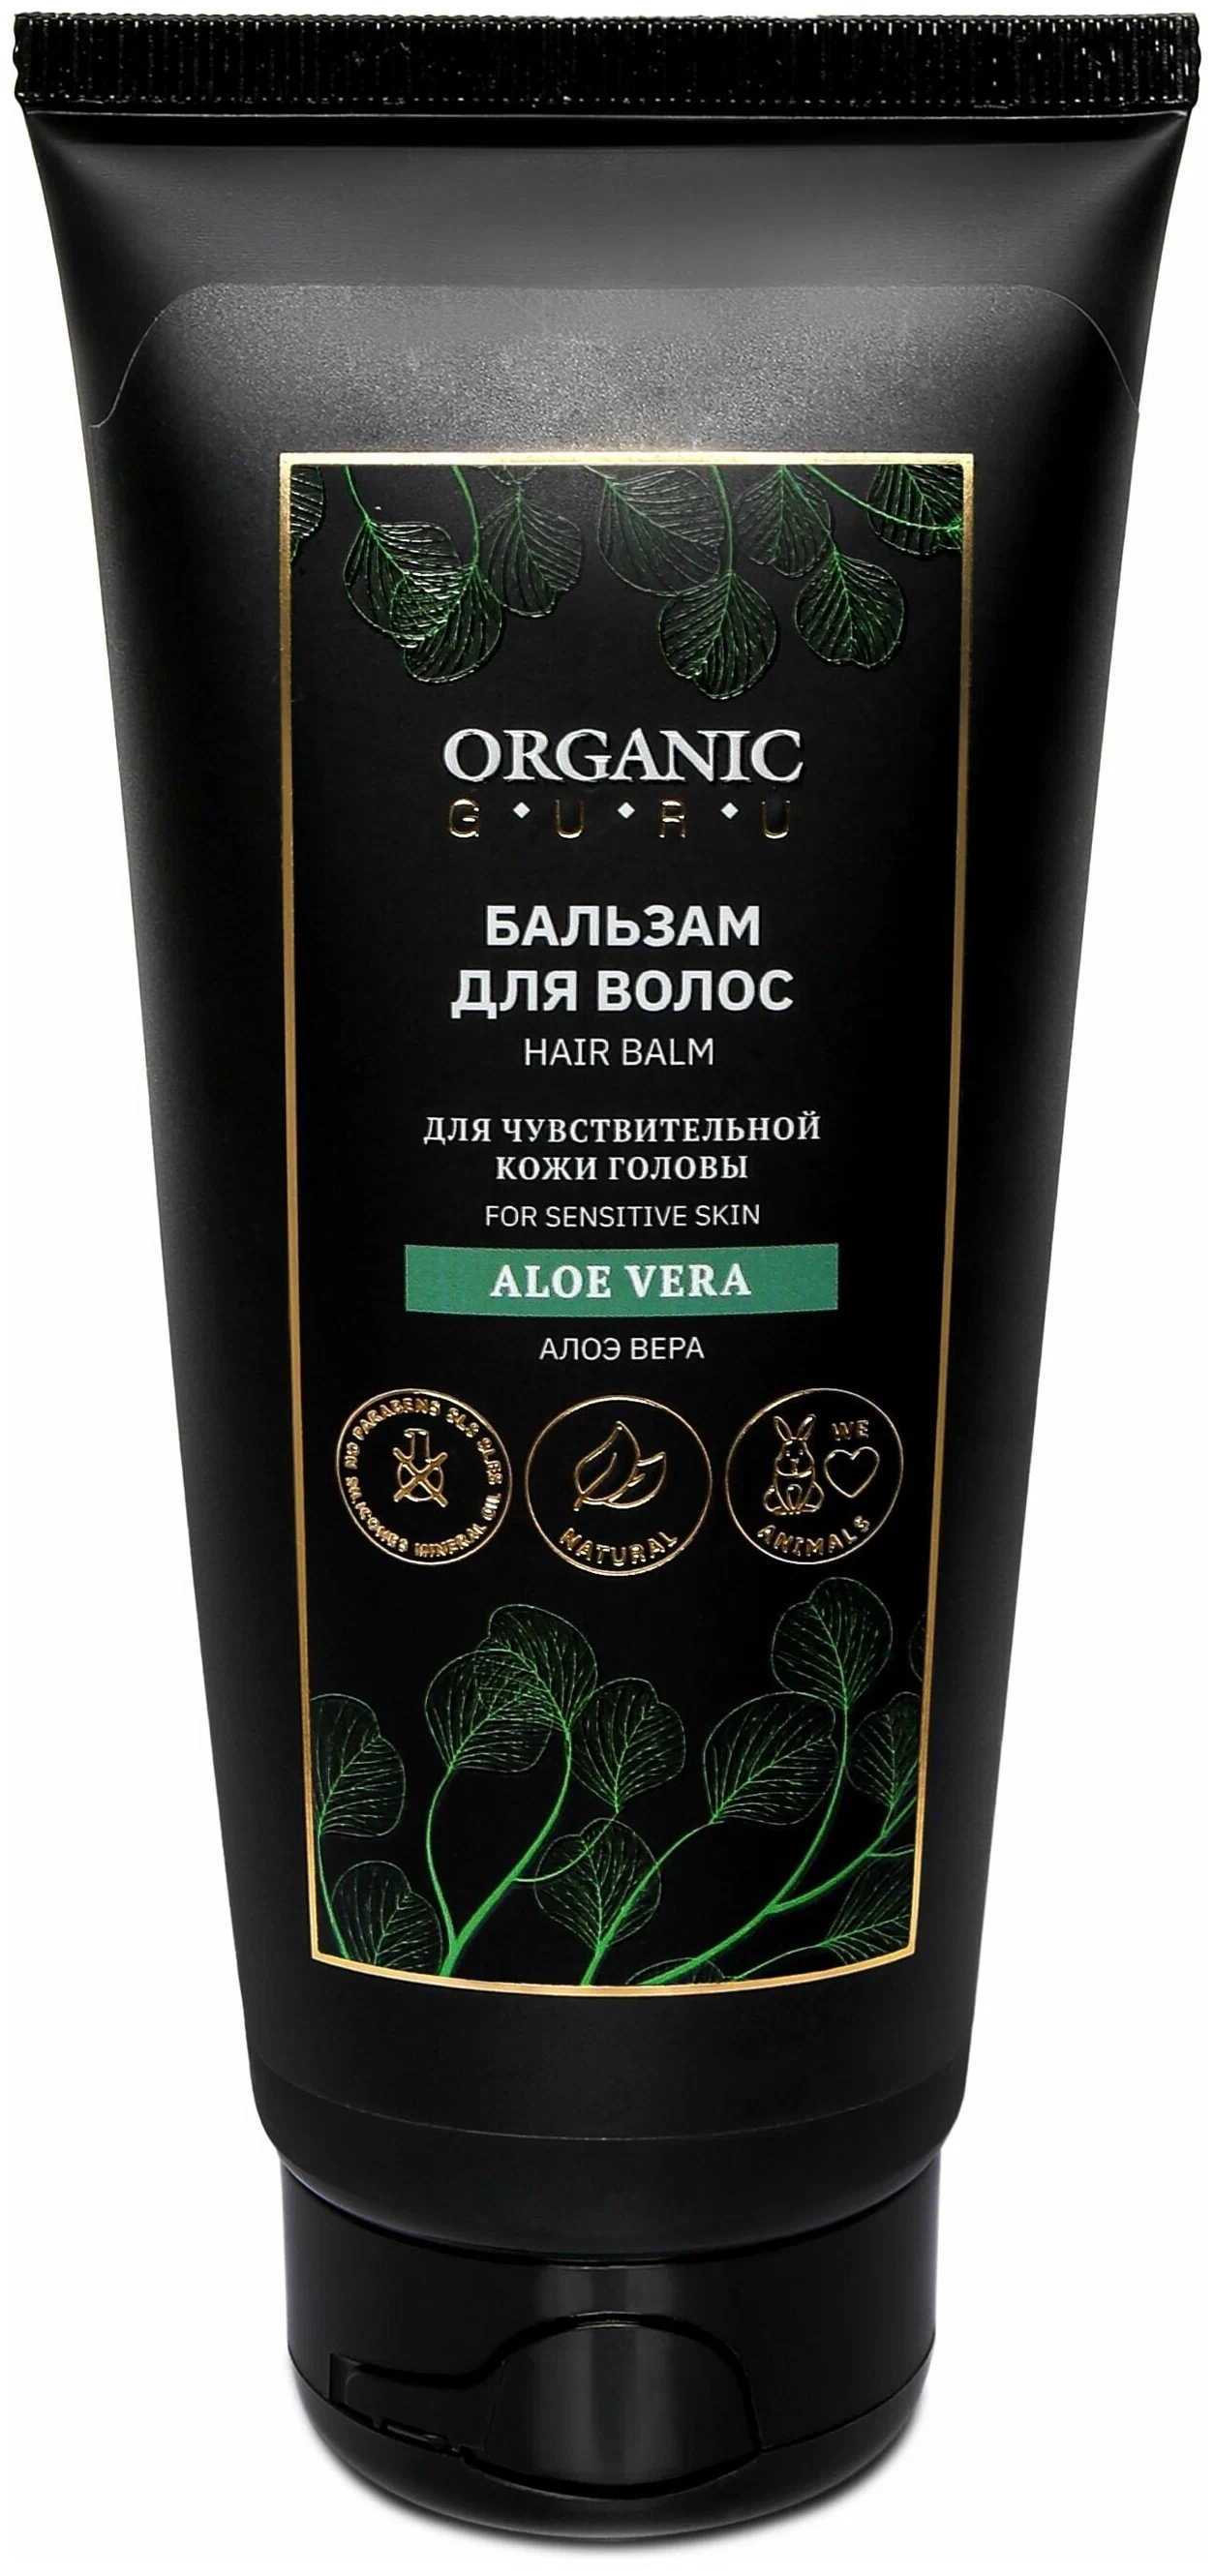 Бальзам-ополаскиватель для волос Organic Guru Aloe Vera для чувствительной кожи, 200 мл бальзам для губ ilene aloe vera natural lip moisturizer 10 г